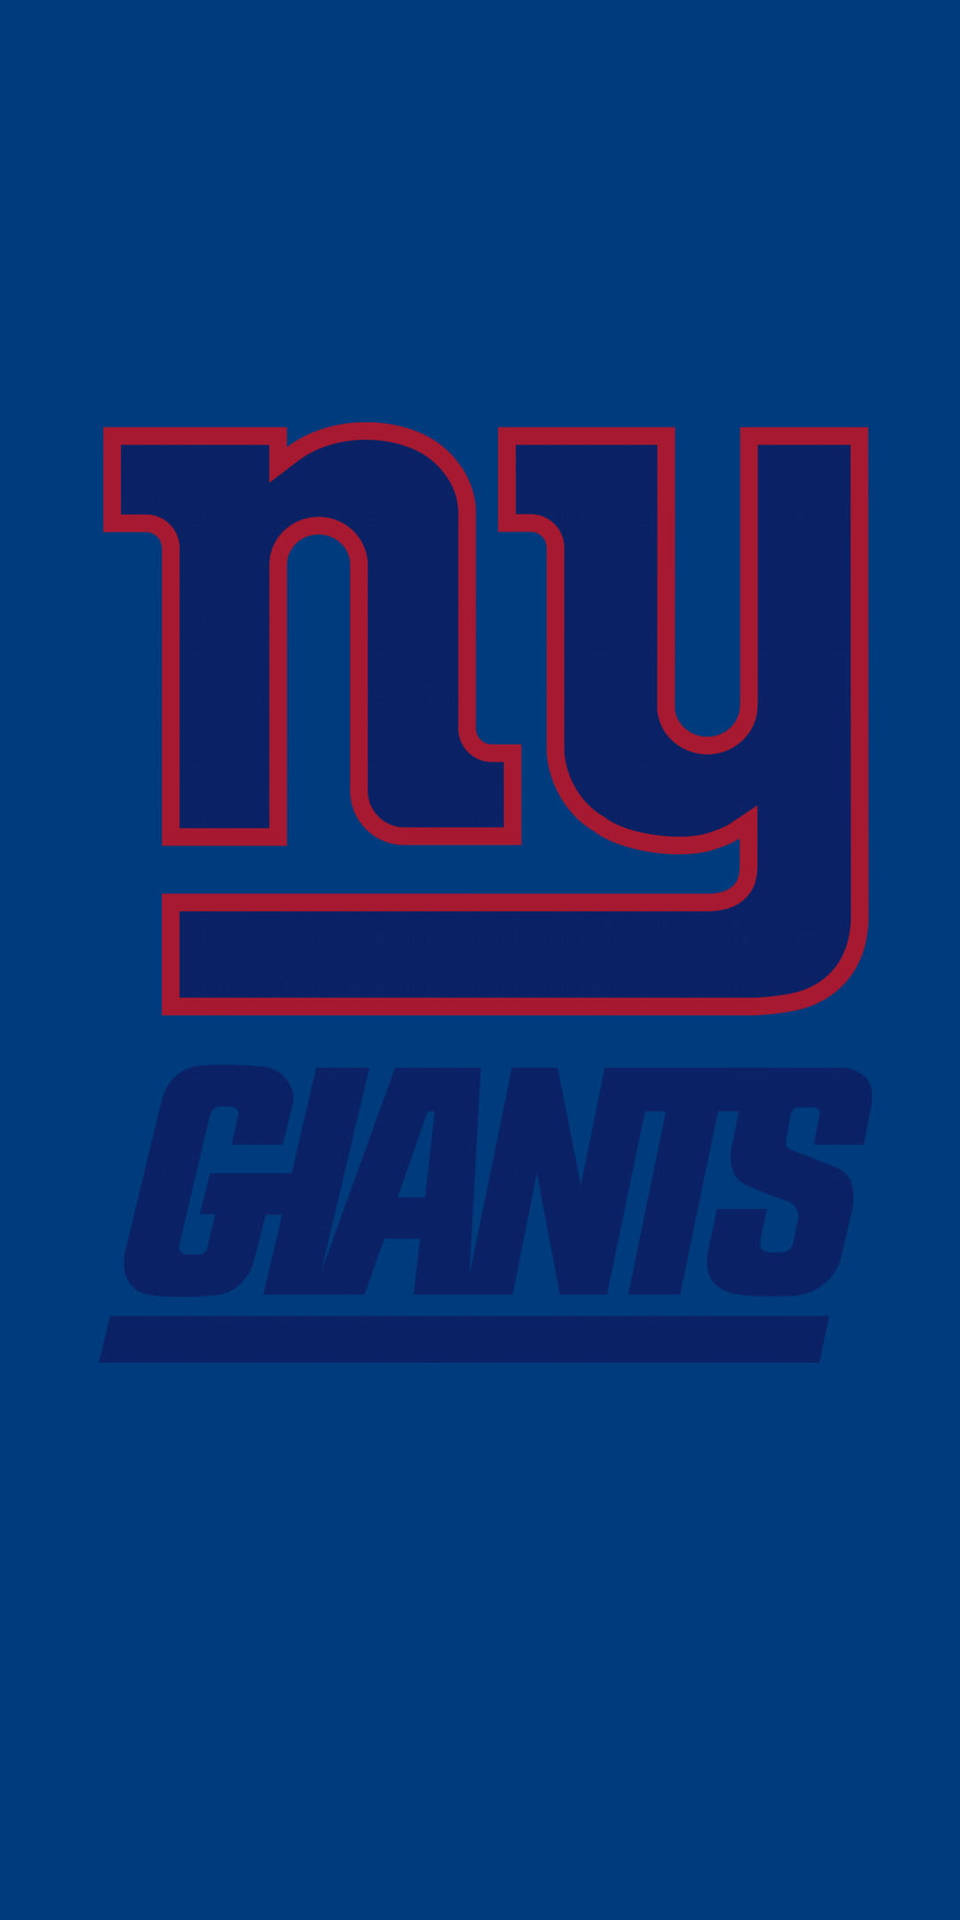 ny giants nfl com